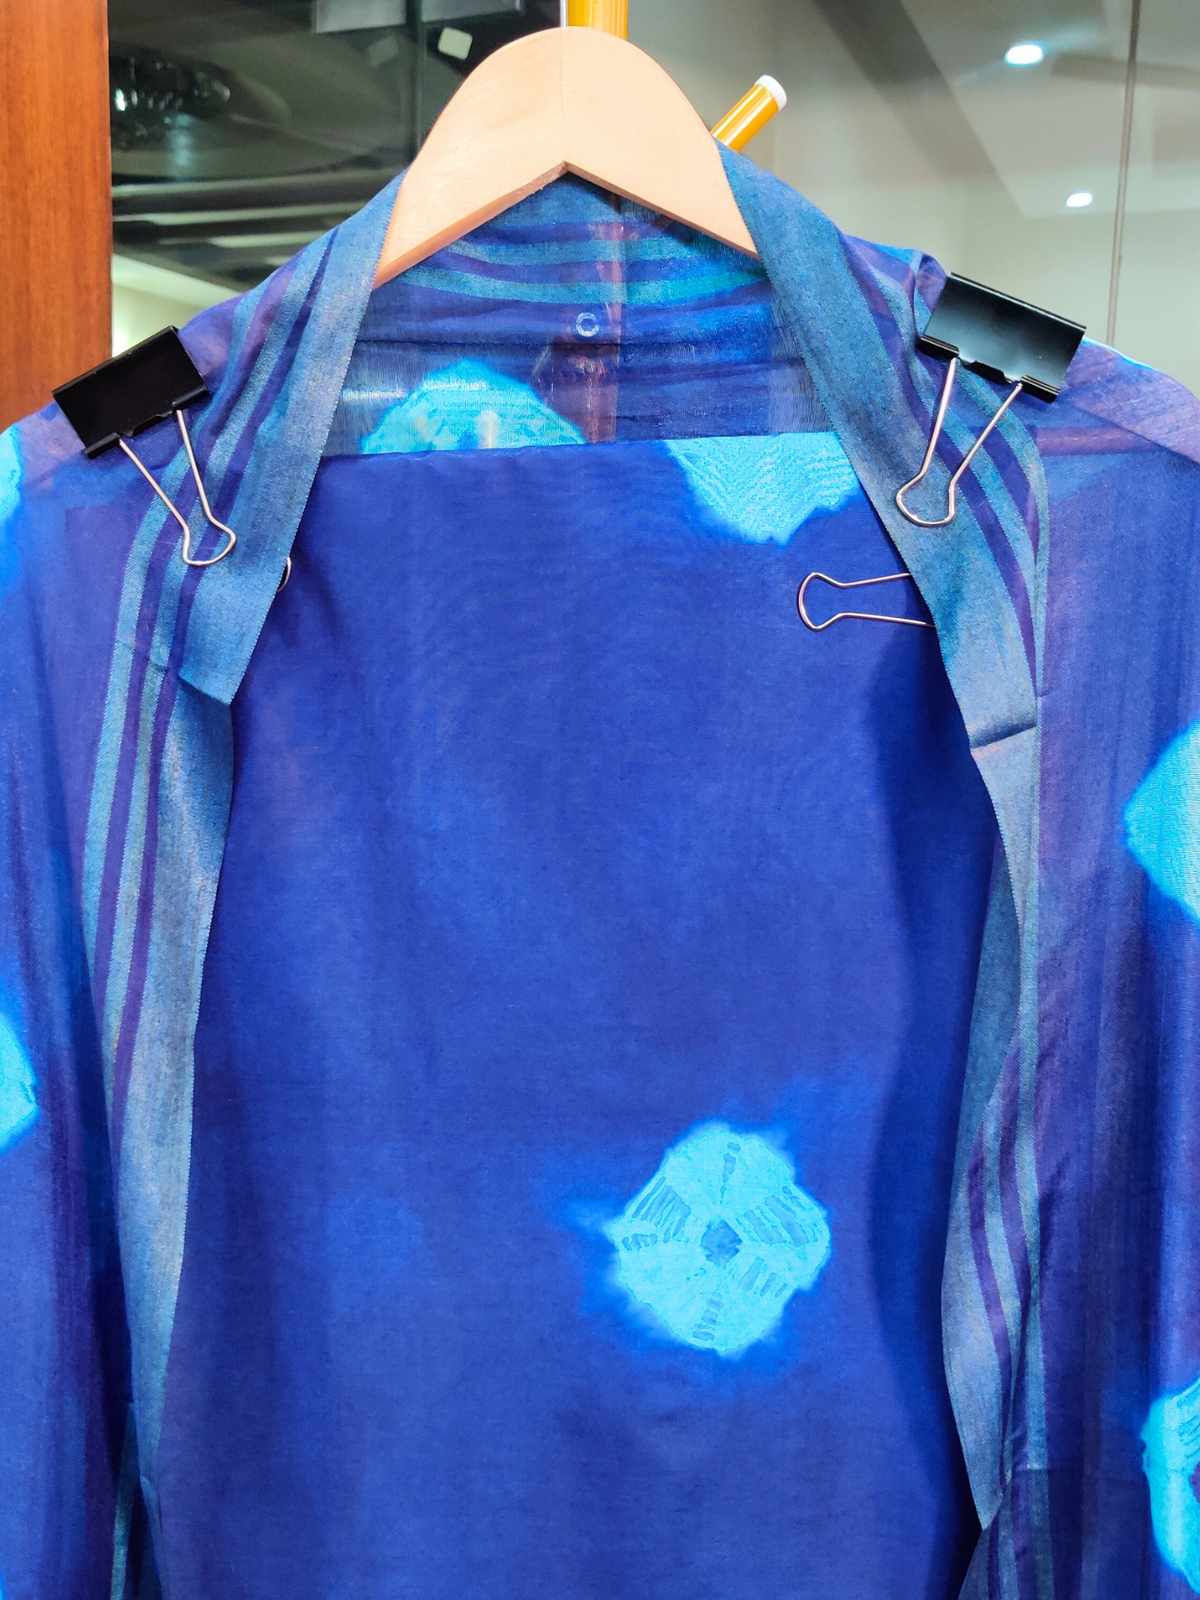 Blue Bandhej Cotton Unstitched Dress Material Suit Set